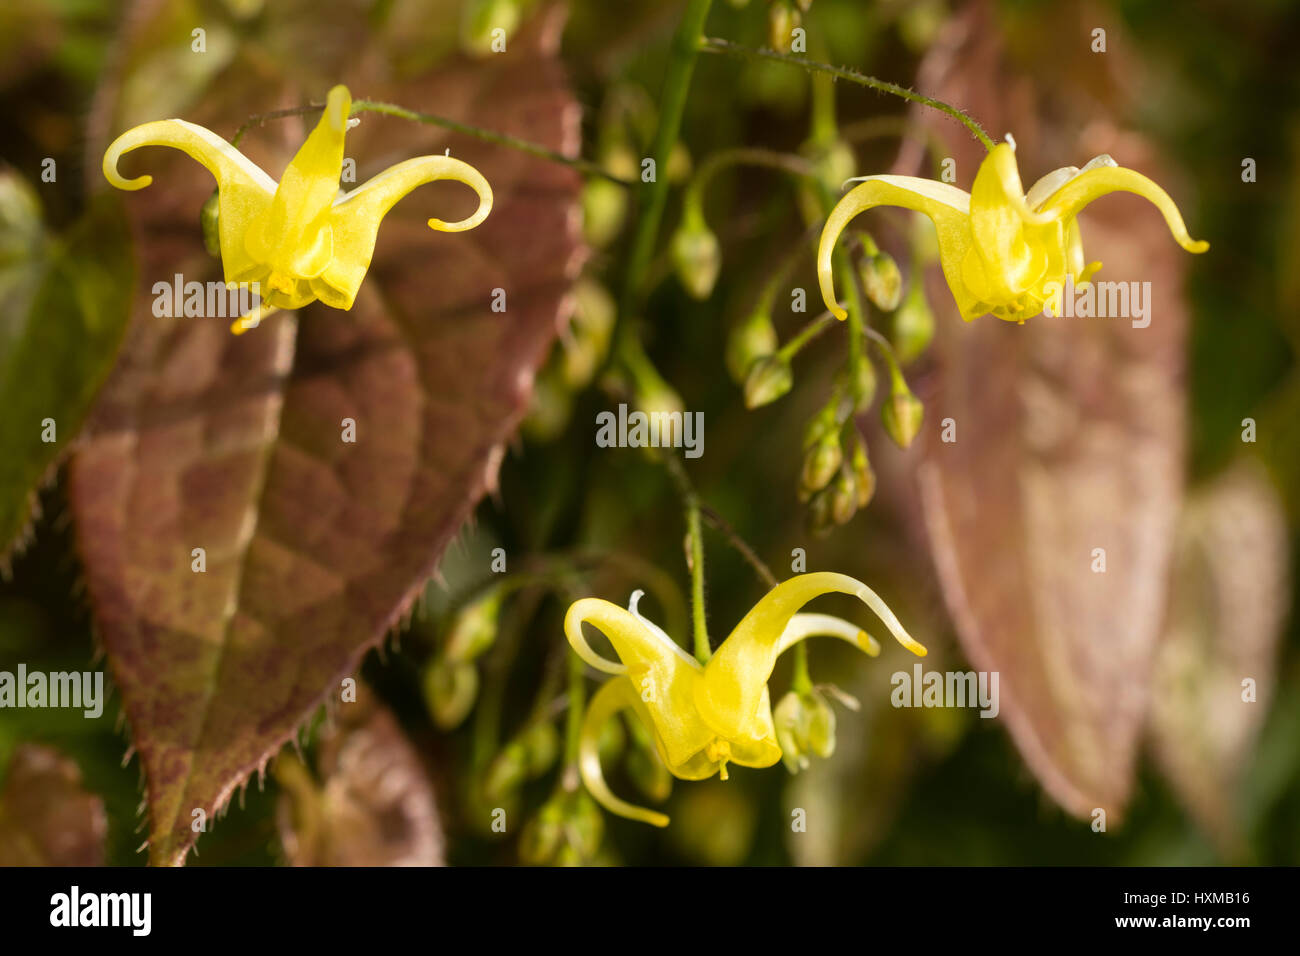 Gros plan sur la petite, jaune fleurs de printemps du barrenwort, Epimedium 'buzz' Buckland, contre le feuillage de printemps brun Banque D'Images